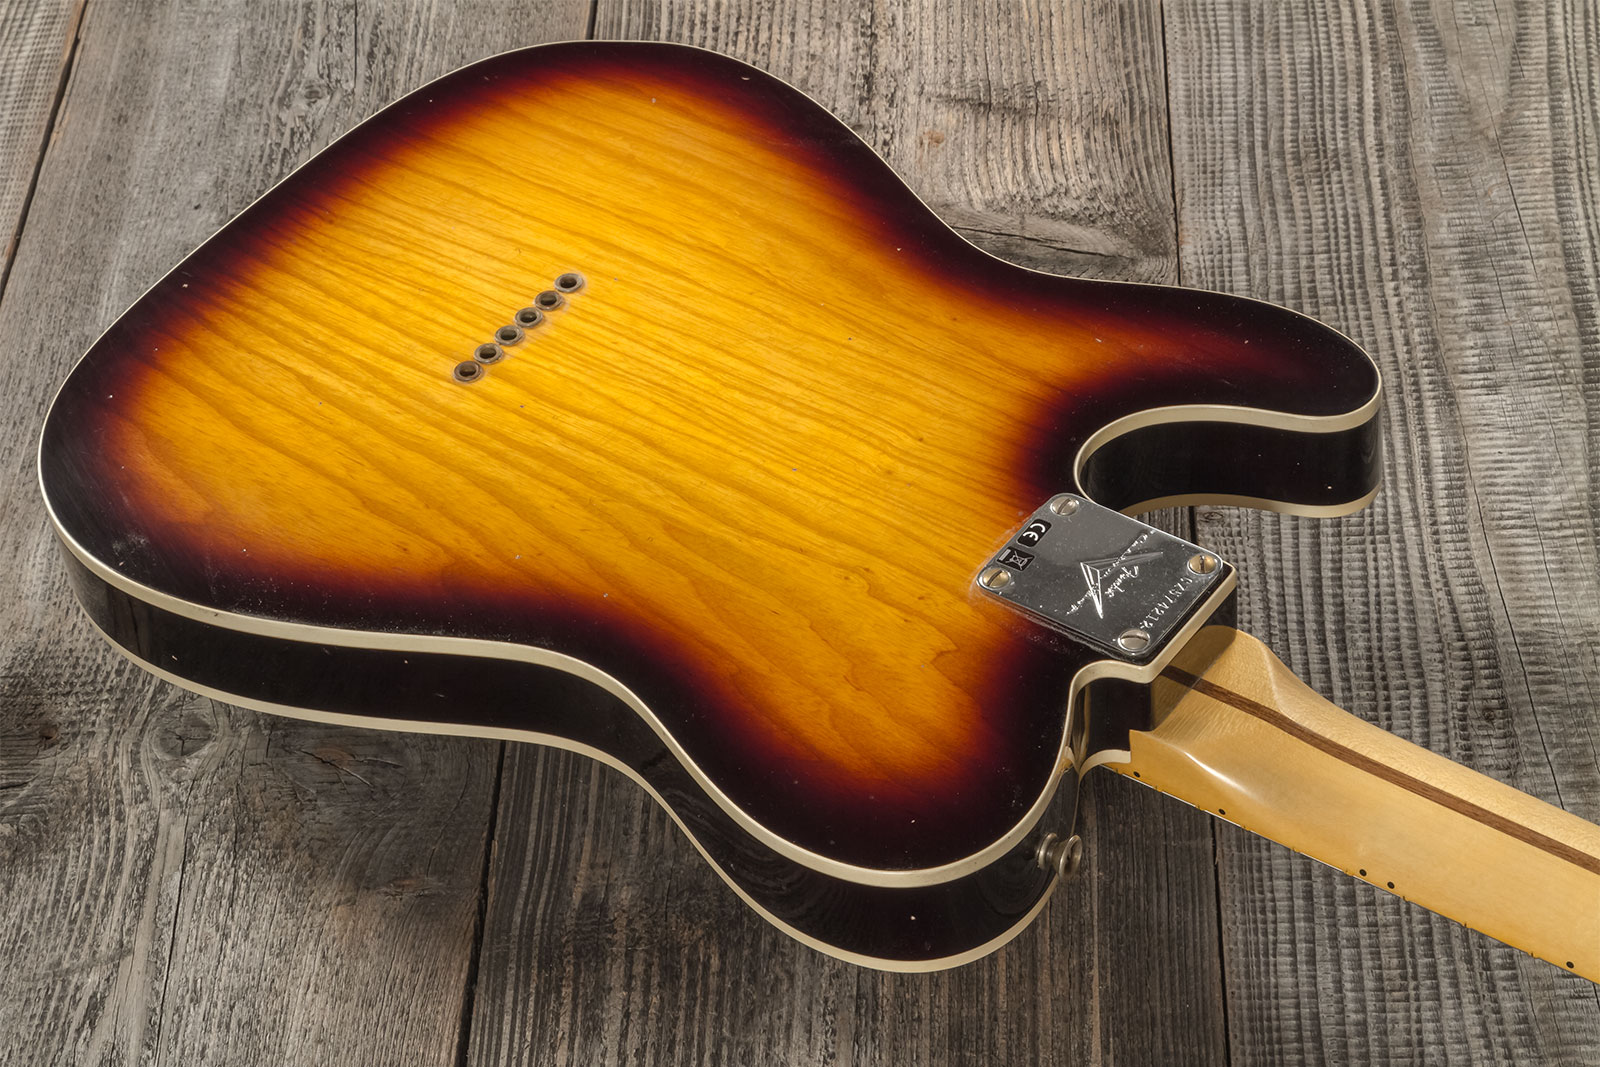 Fender Custom Shop Tele Thinline 50s Mn #cz574212 - Journeyman Relic Aged 2-color Sunburst - Guitarra eléctrica con forma de tel - Variation 6